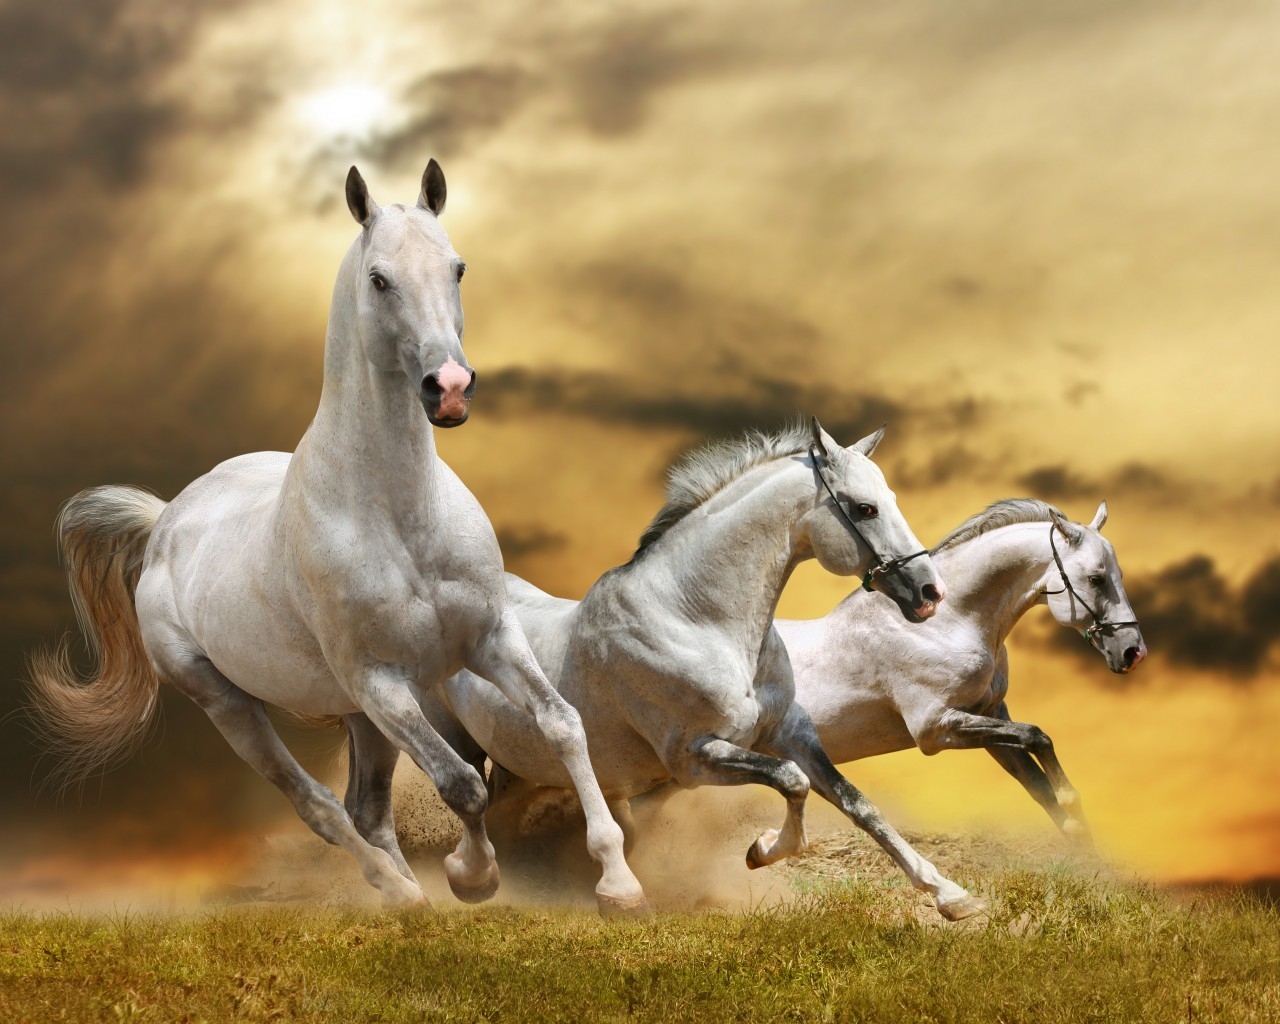 Wilde White Horses for 1280 x 1024 resolution